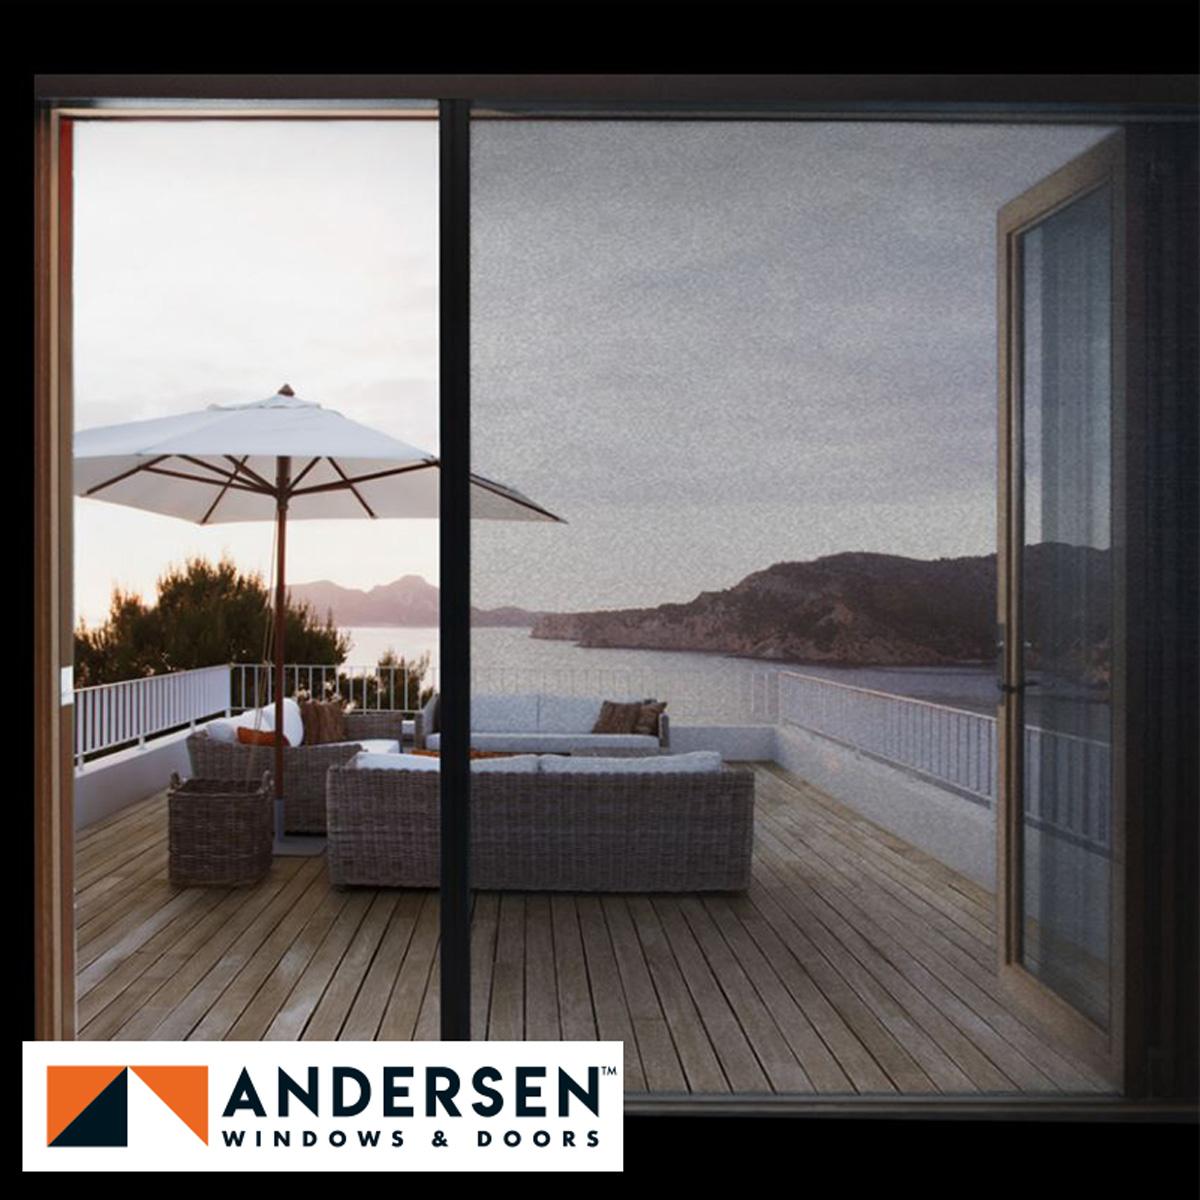 Andersen Windows and Doors New Product Updates